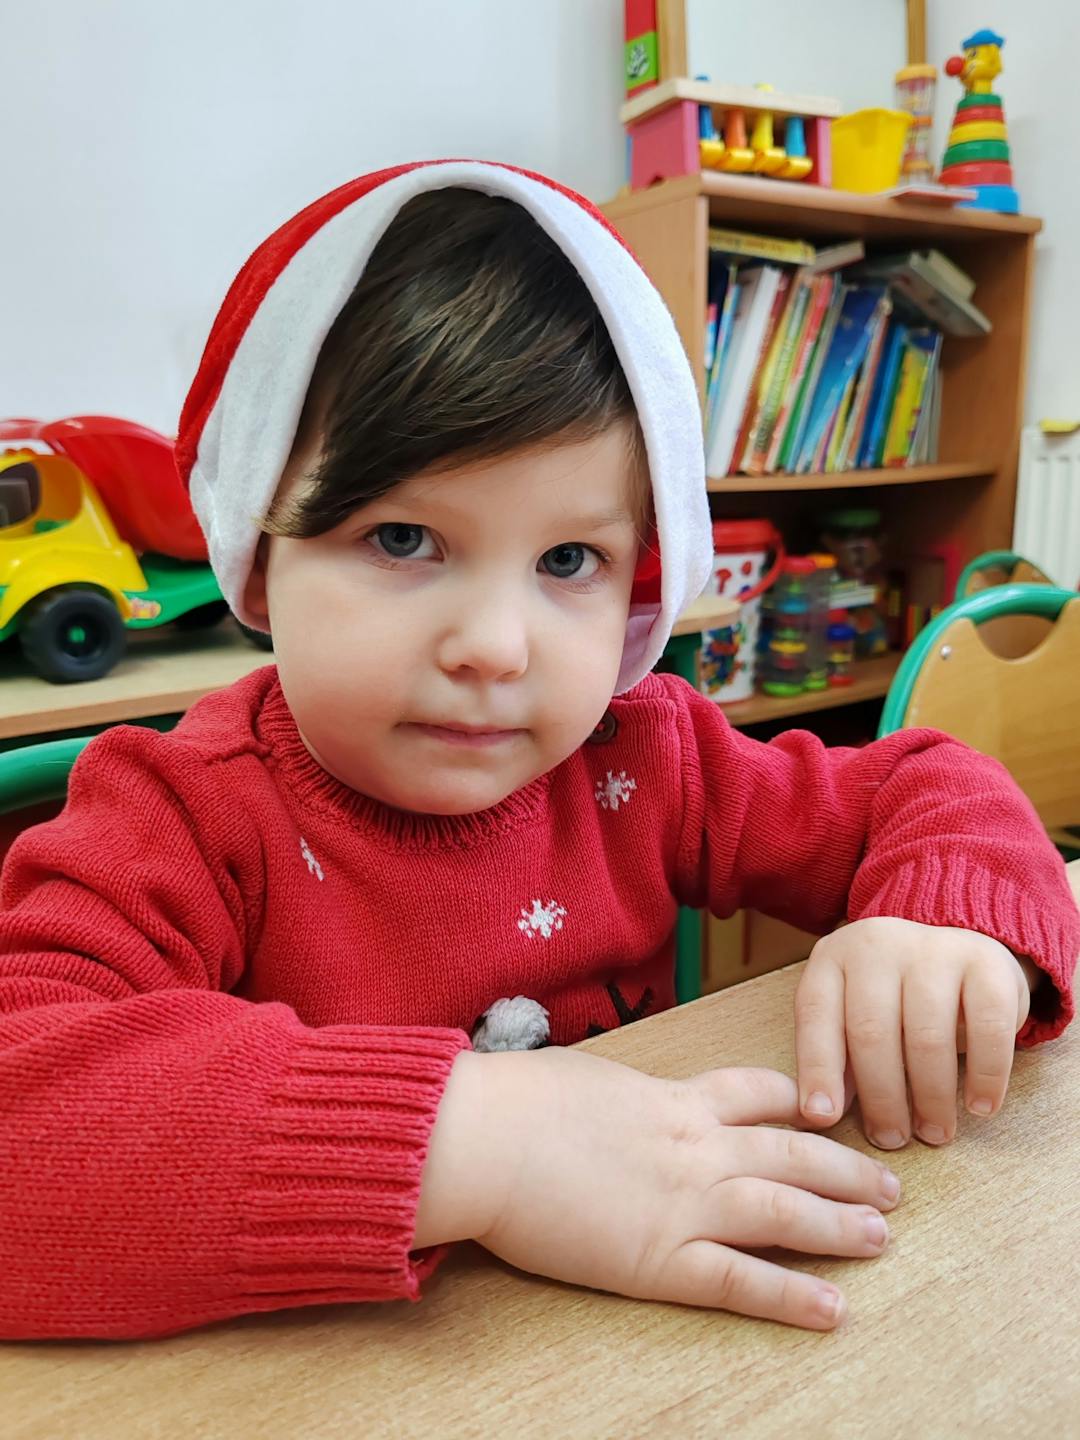 Niezapomniane spotkanie z Mikołajem! | Chłopczyk w czapce Mikołaja przy stoliku.jpg